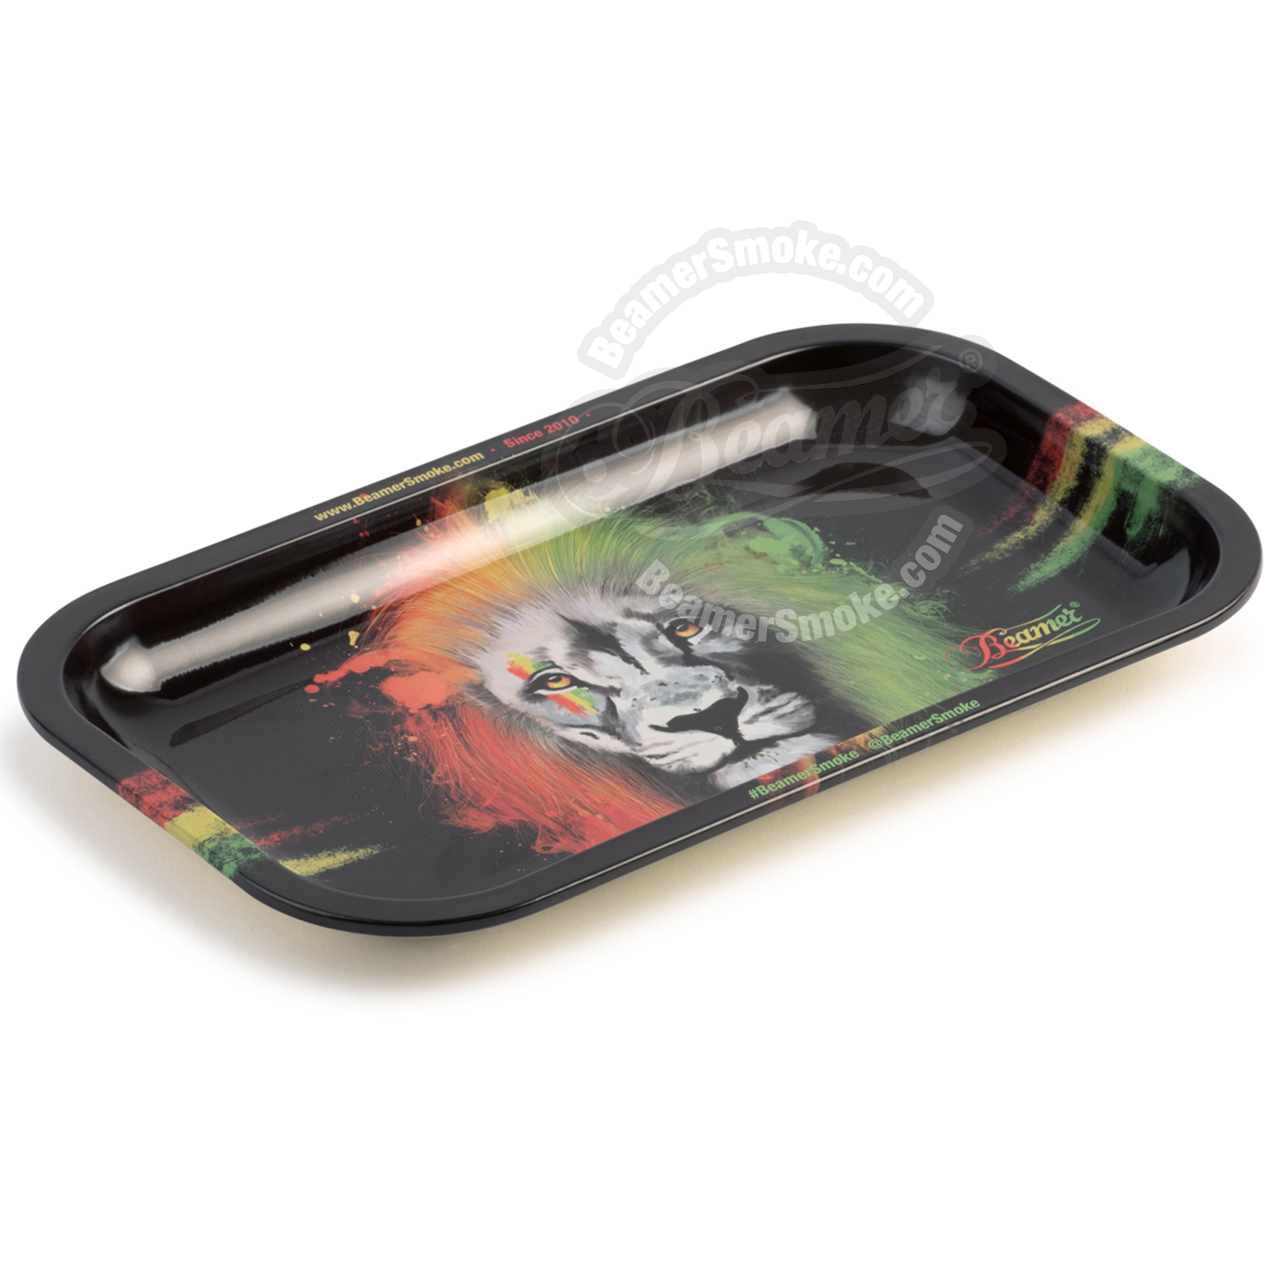 Beamer Medium Metal Rolling Tray, Rasta Lion Design - 10.75 x 6.25